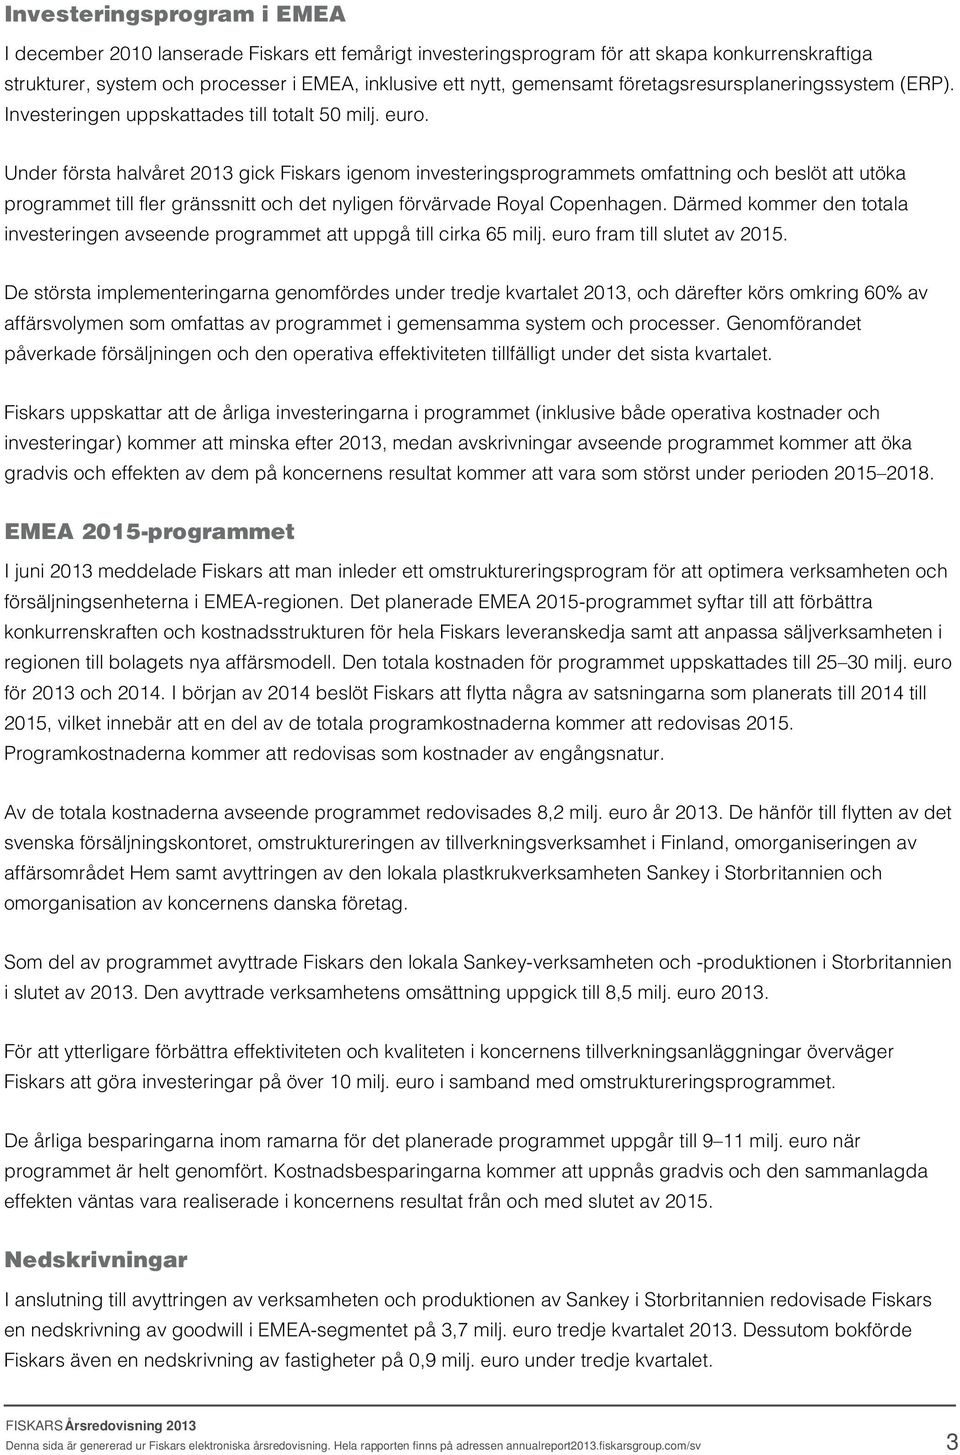 Under första halvåret 2013 gick Fiskars igenom investeringsprogrammets omfattning och beslöt att utöka programmet till fler gränssnitt och det nyligen förvärvade Royal Copenhagen.